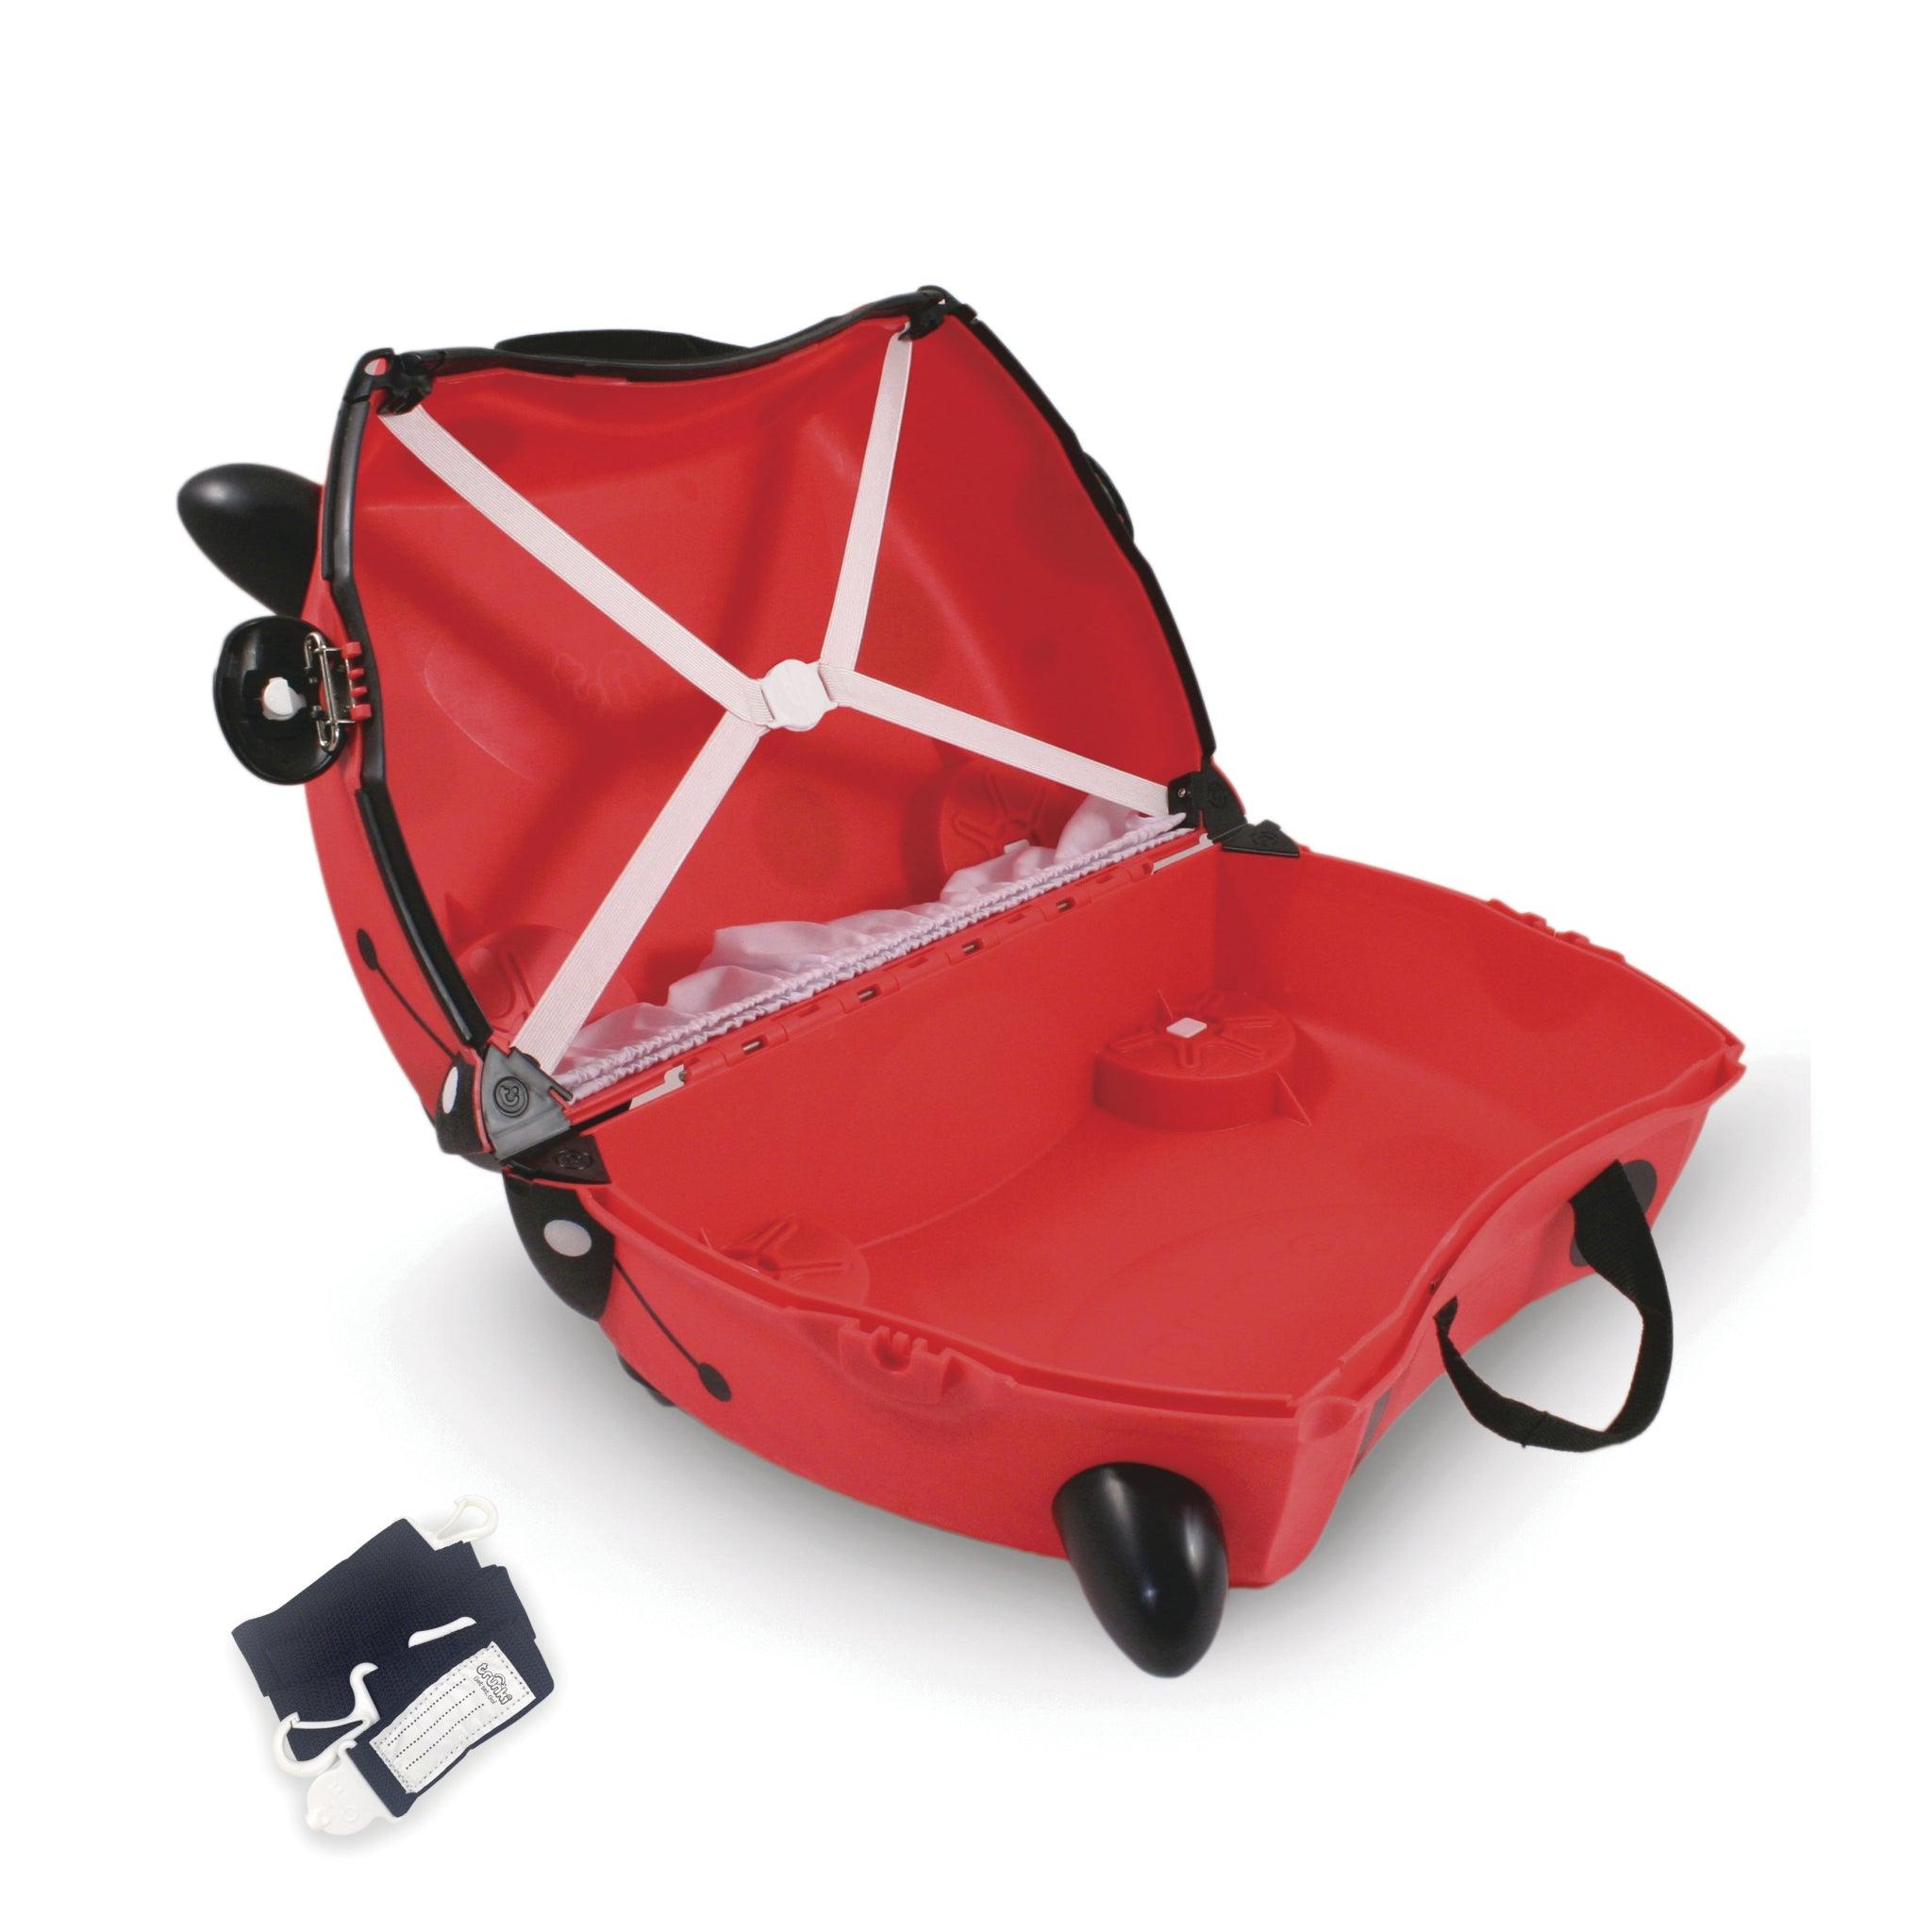 Trunki: jeżdżąca walizka dla dzieci biedronka Harley - Noski Noski